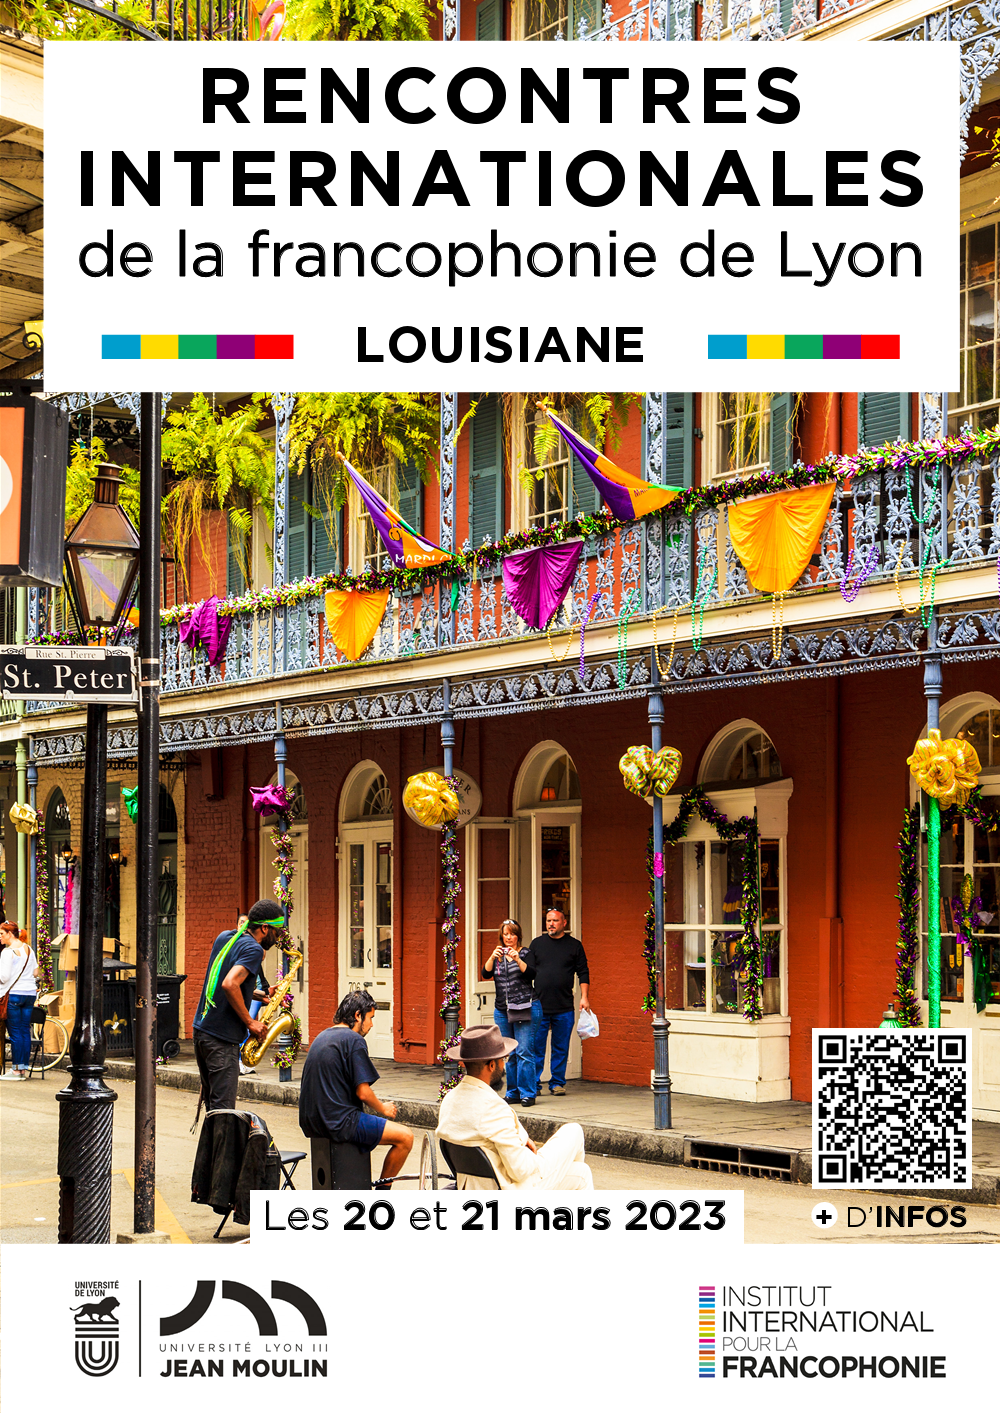 Rencontres Internationales de la francophonie de Lyon - Louisiane - 20 et 21 mars 2023